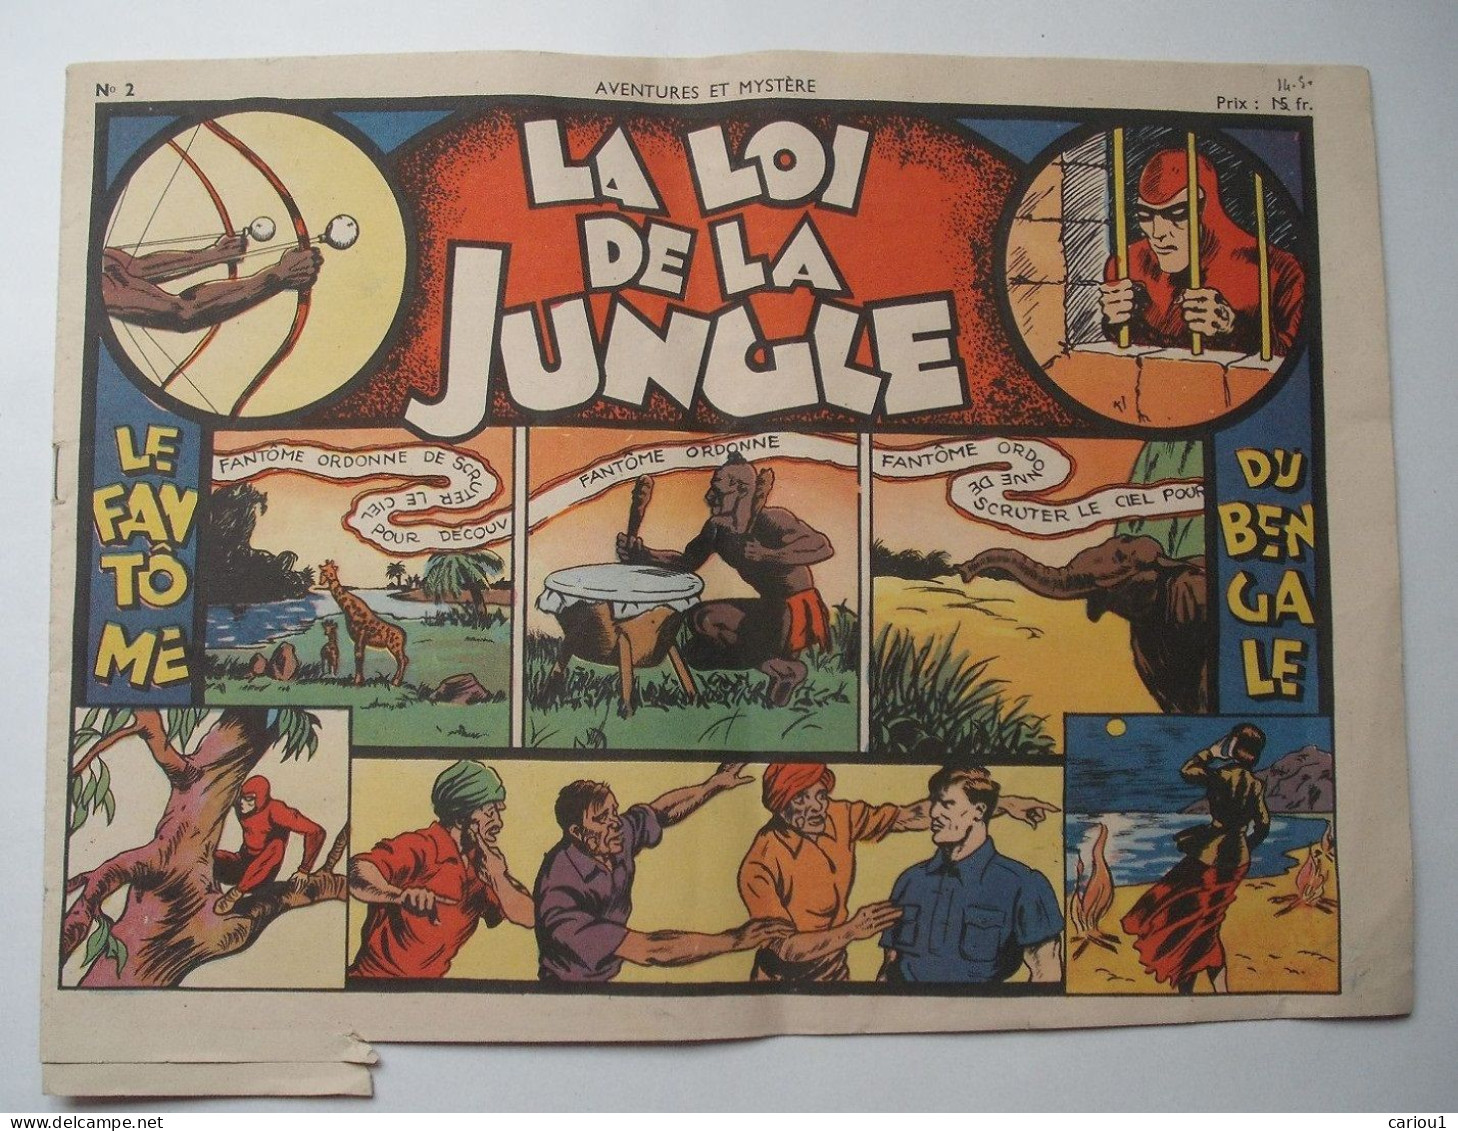 C1  LE FANTOME La LOI DE LA JUNGLE Aventures Et Mystere # 2 1947 SAGE The Phantom PORT INCLUS France - Original Edition - French